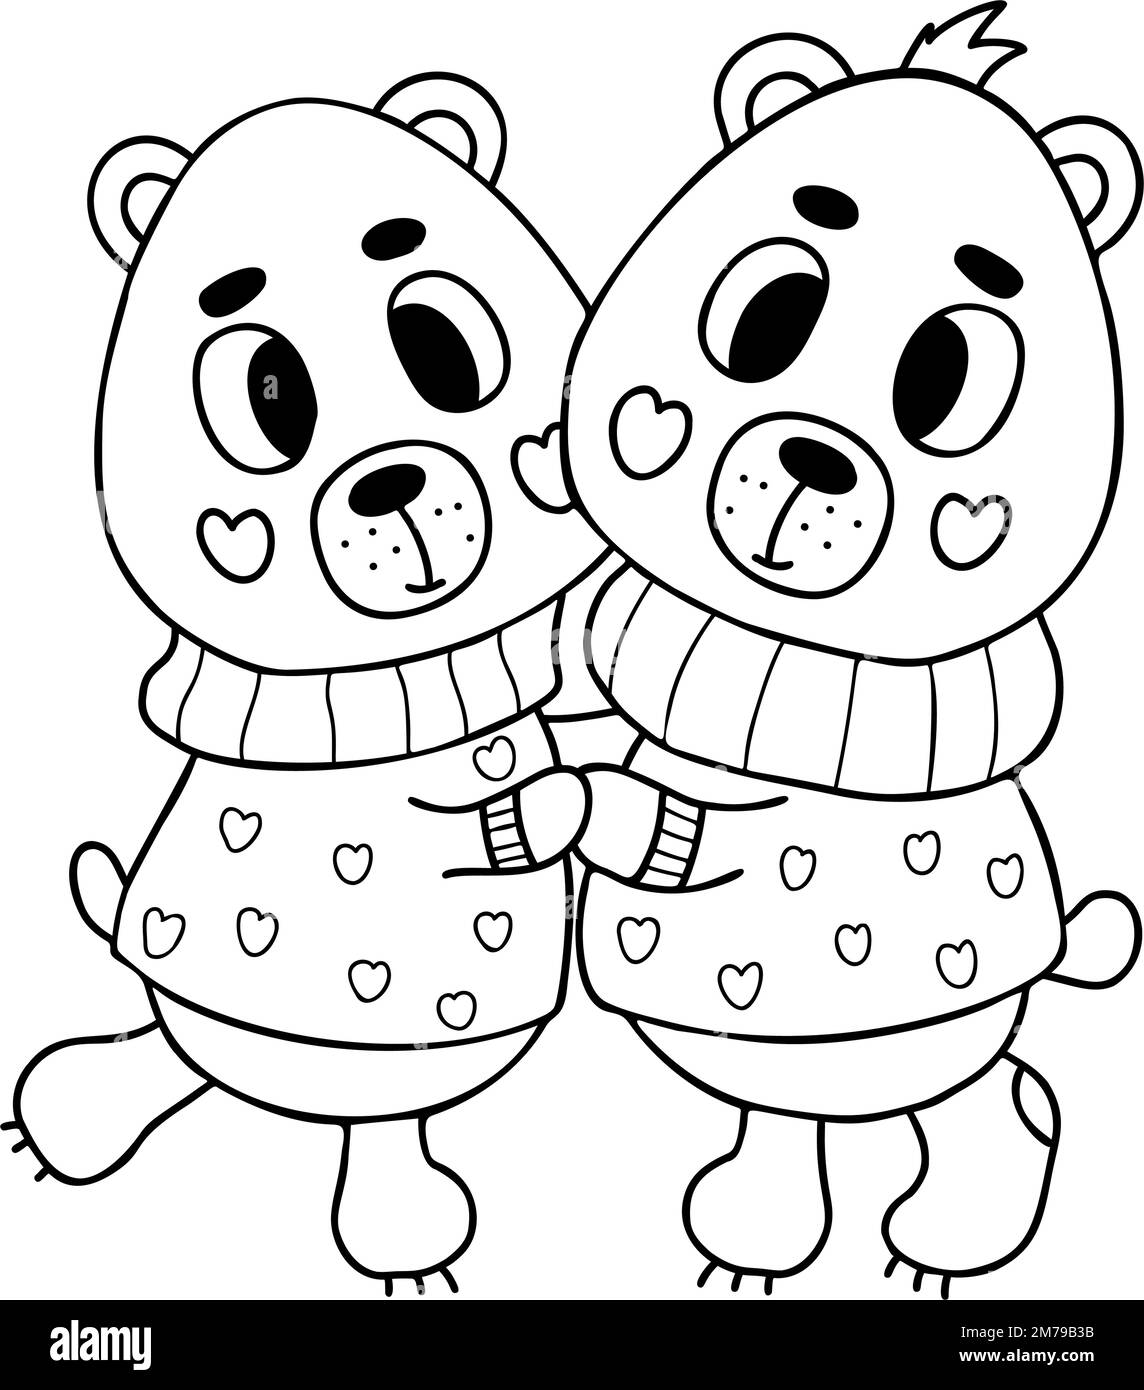 Kombinieren Sie süße, verliebt umarmende Bären in romantischen Pullover. Vektorgrafik im Kritzelstil. Lustige niedliche Tierfiguren. Umrisszeichnung Stock Vektor